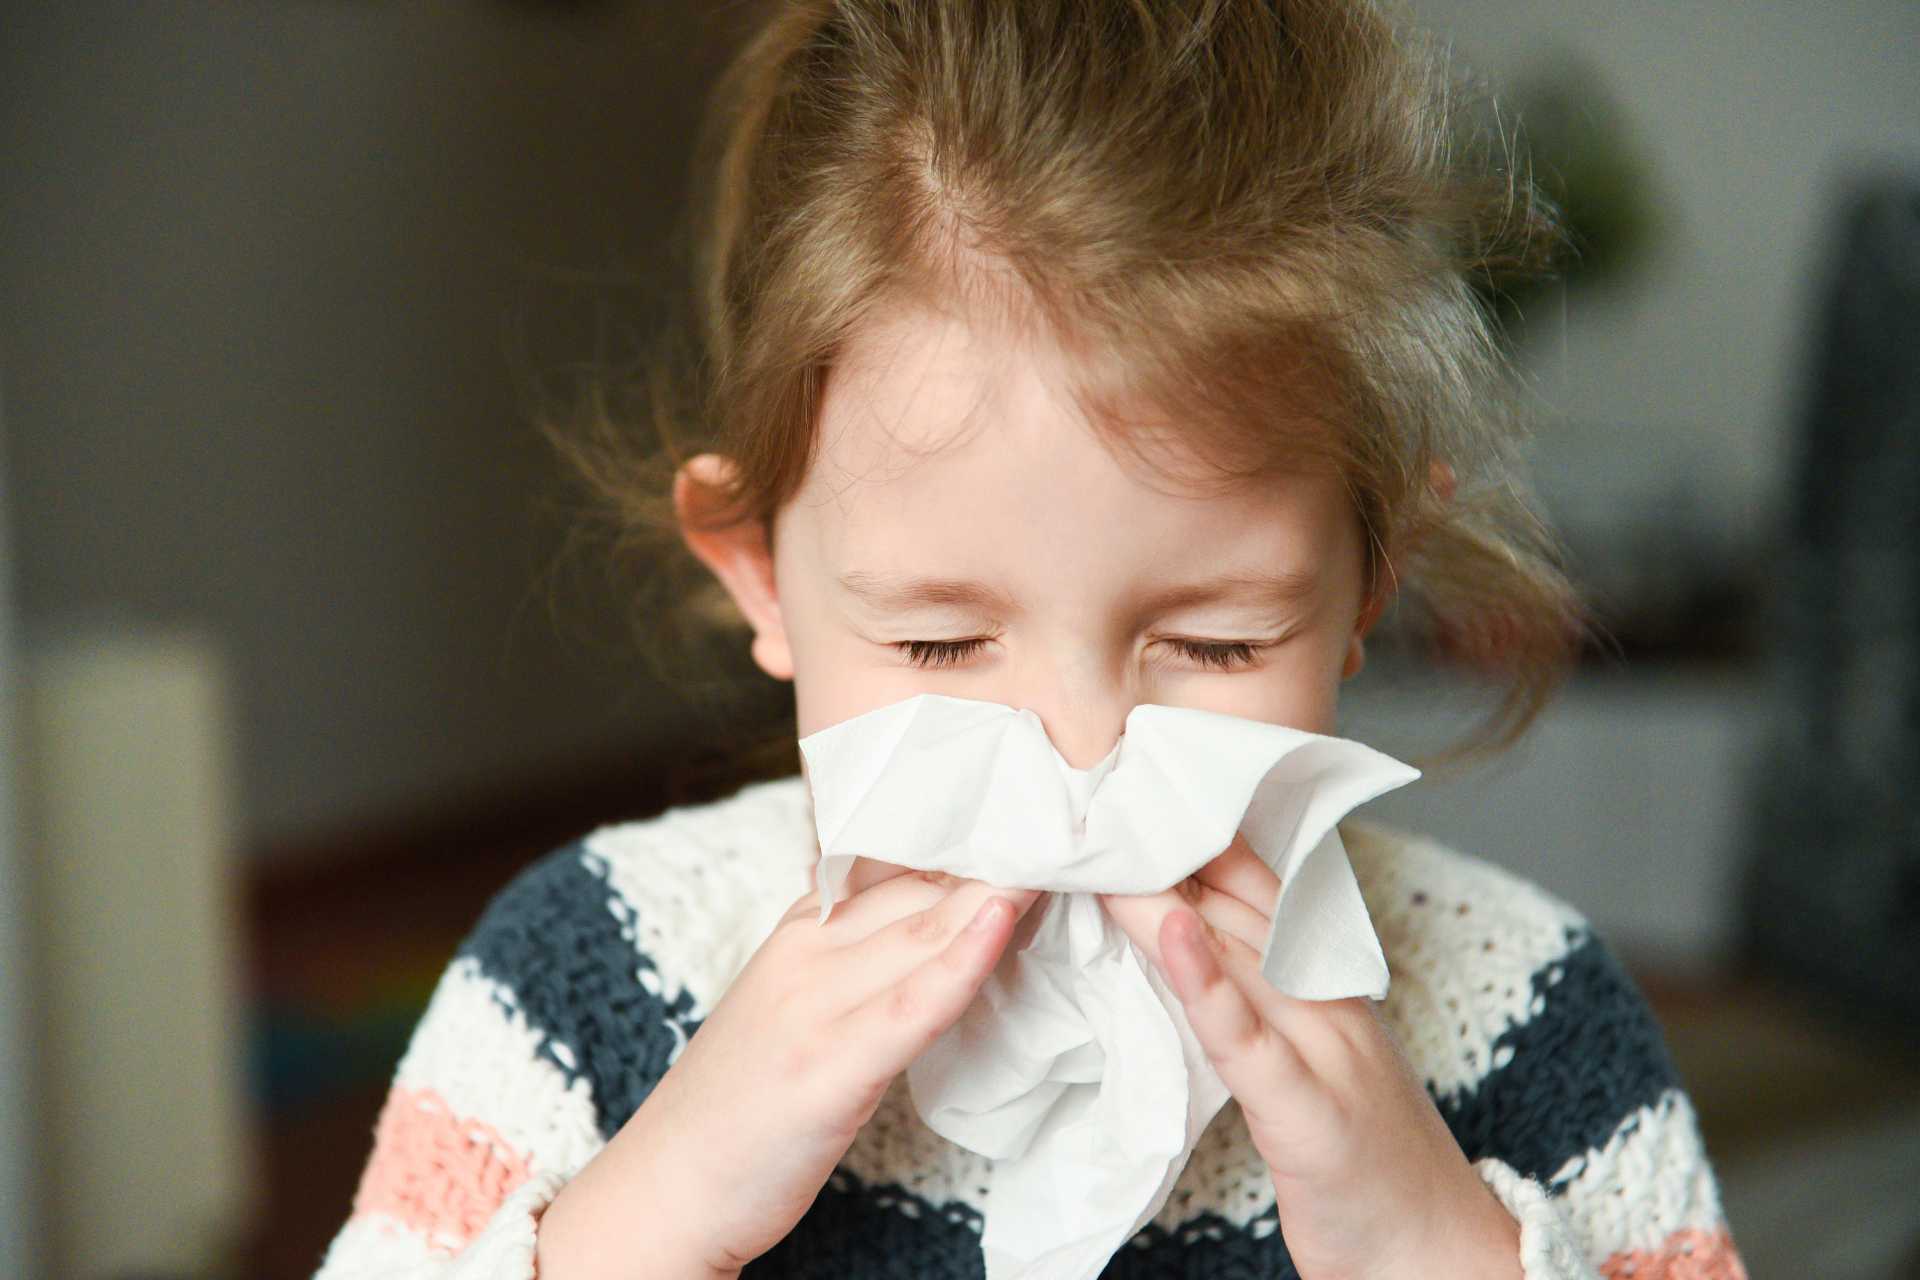 Tosse e raffreddore nei bambini: la durata dell’infezione dipende dal microbiota nasale? 